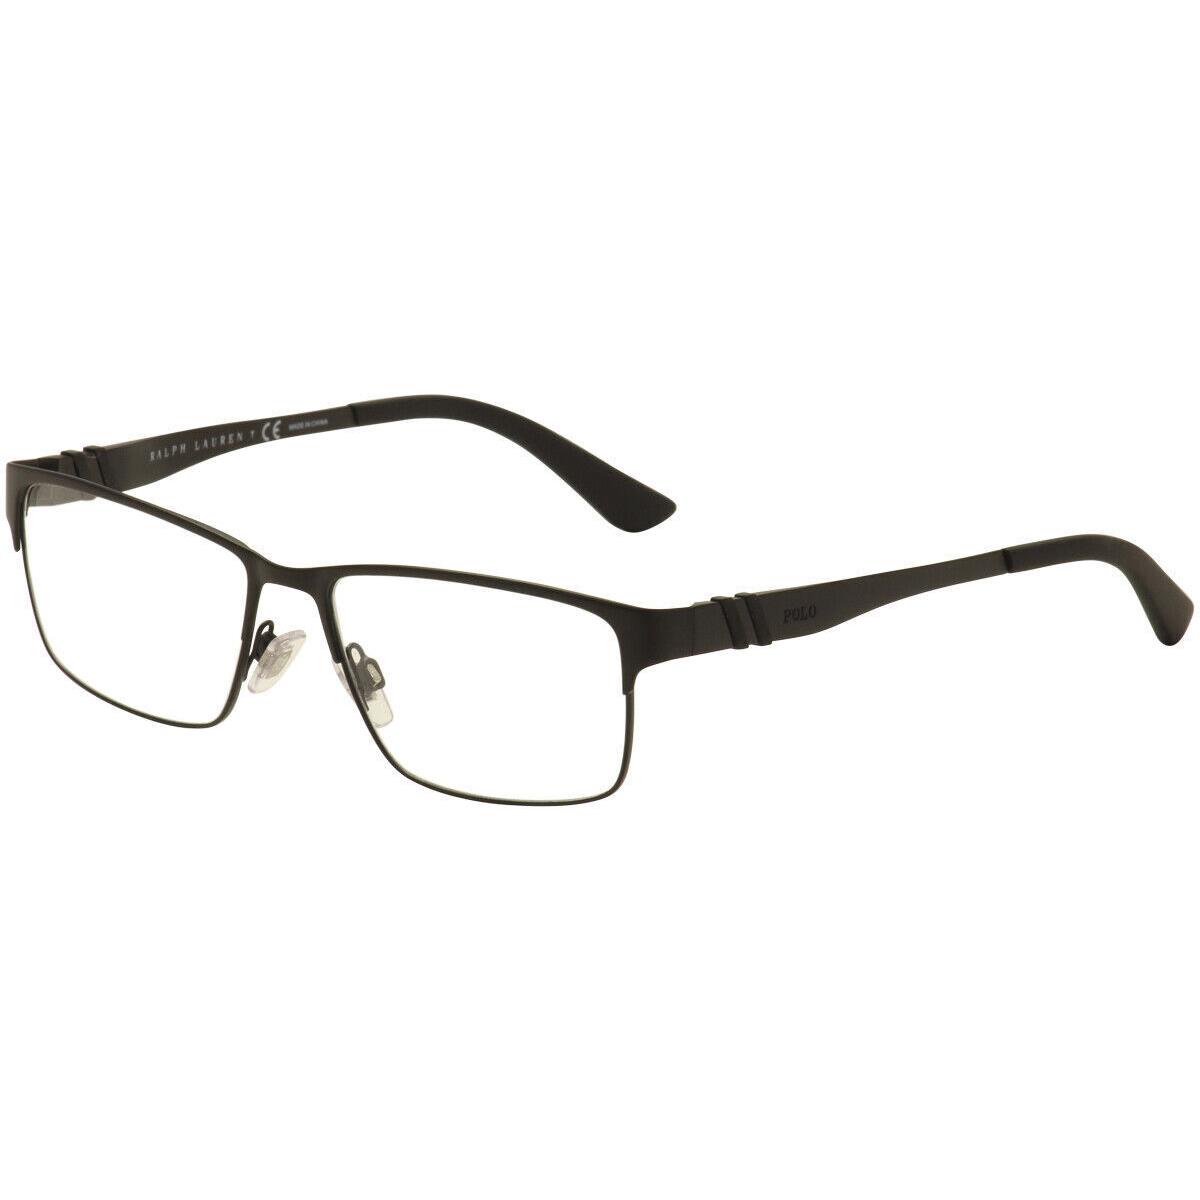 Polo Ralph Lauren Men`s Eyeglasses PH1147 9038 Black Optical Frame 56mm - Black Frame